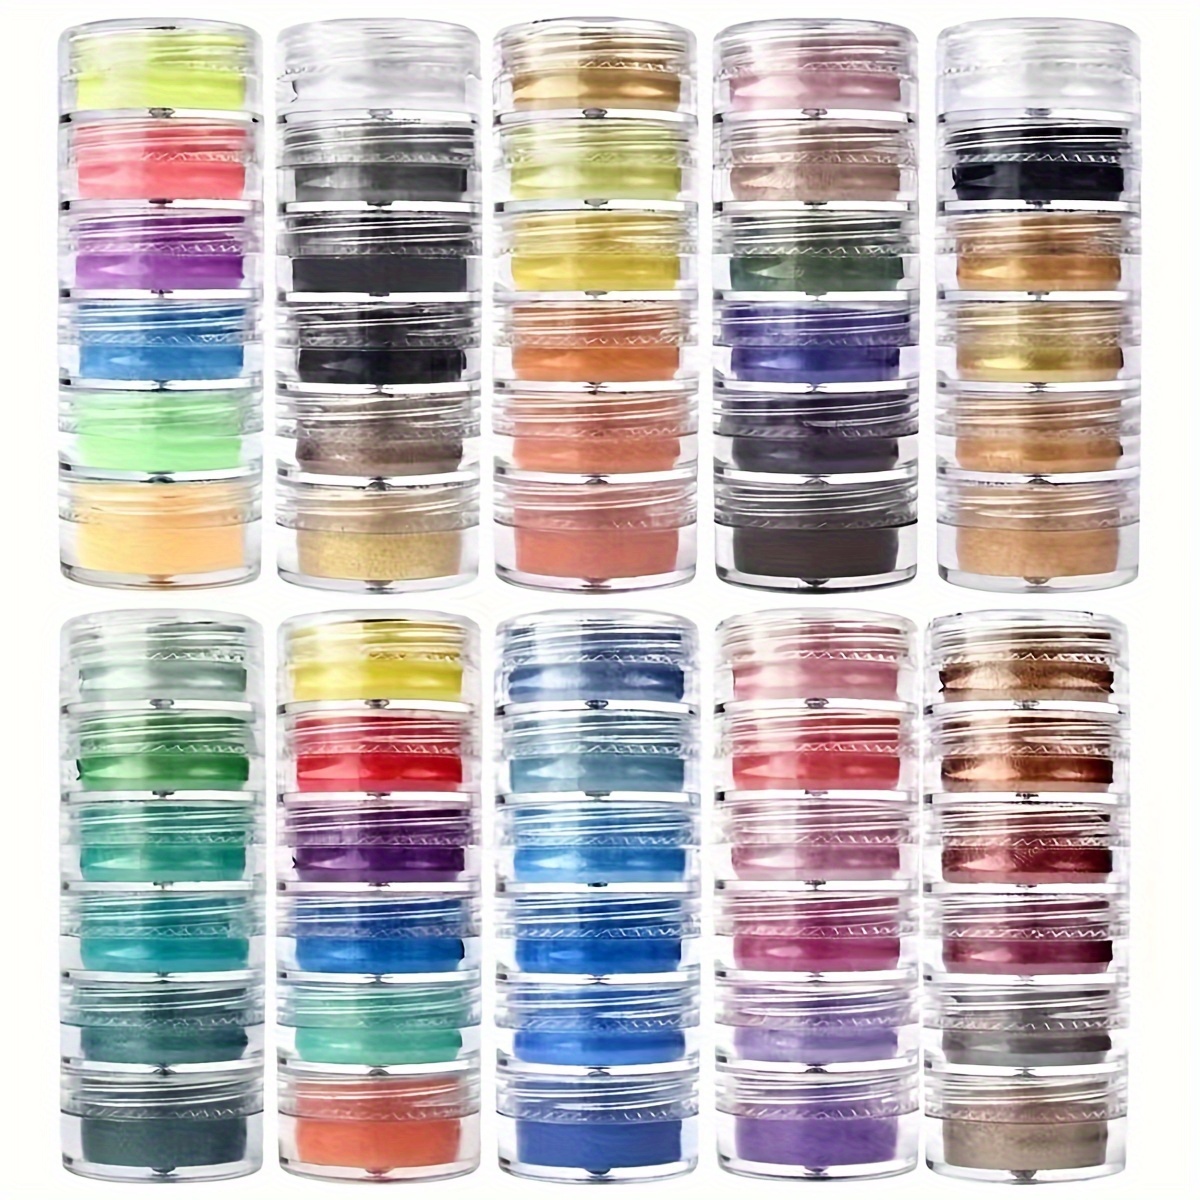 16 Unids/set Colores Tinte Pigmentos Resina Cera Diy Uv - Temu